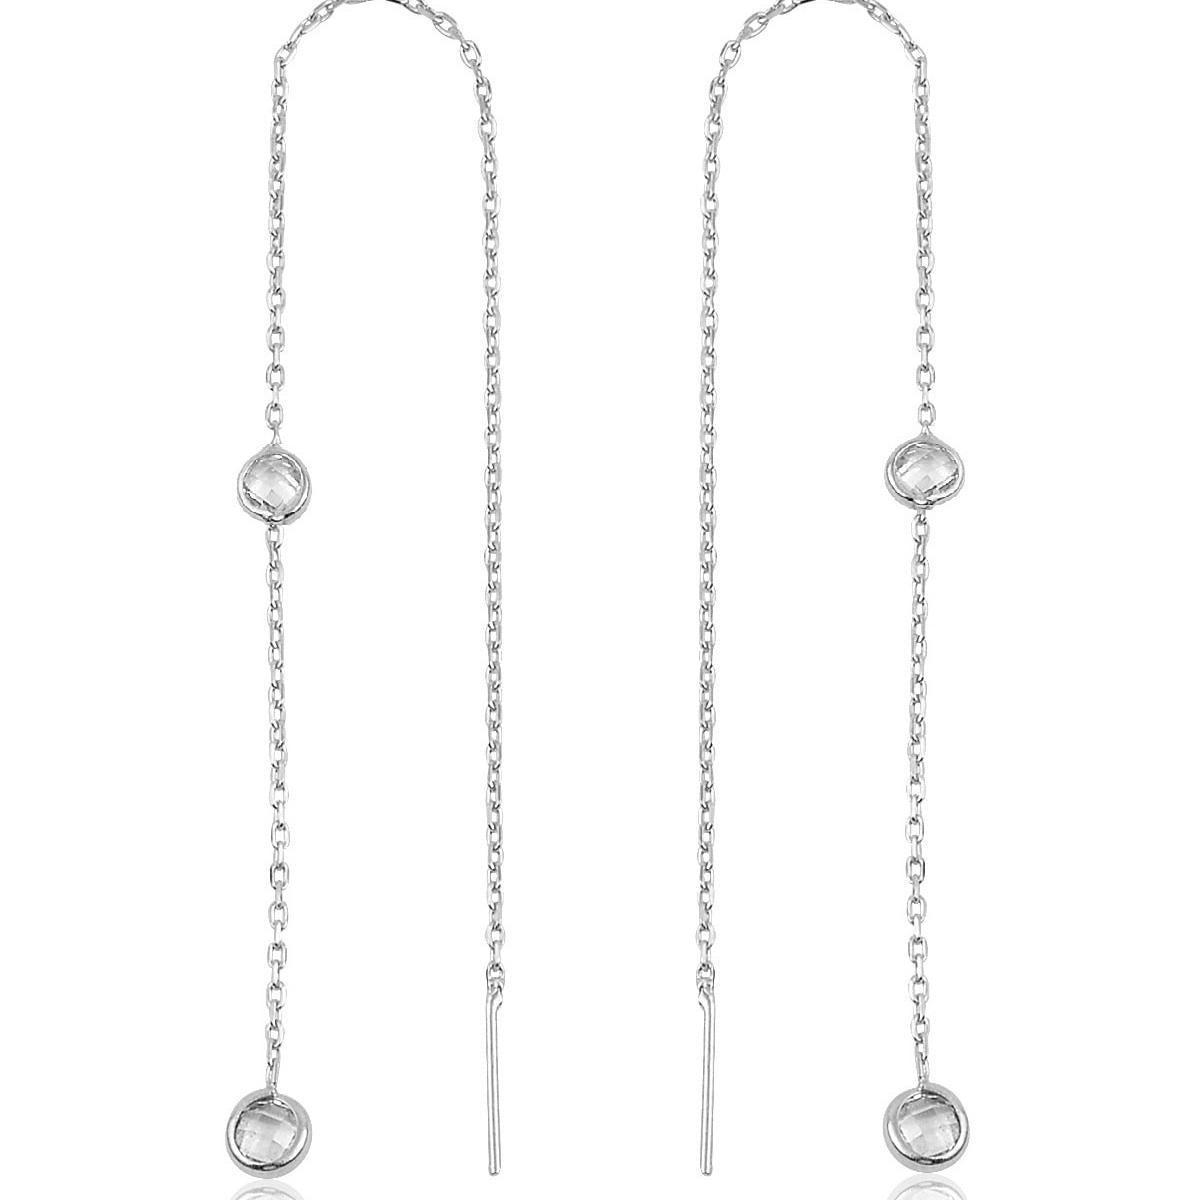 White Gold Threader Earrings • Threader Diamond Earrings, Gift For Her - Trending Silver Gifts